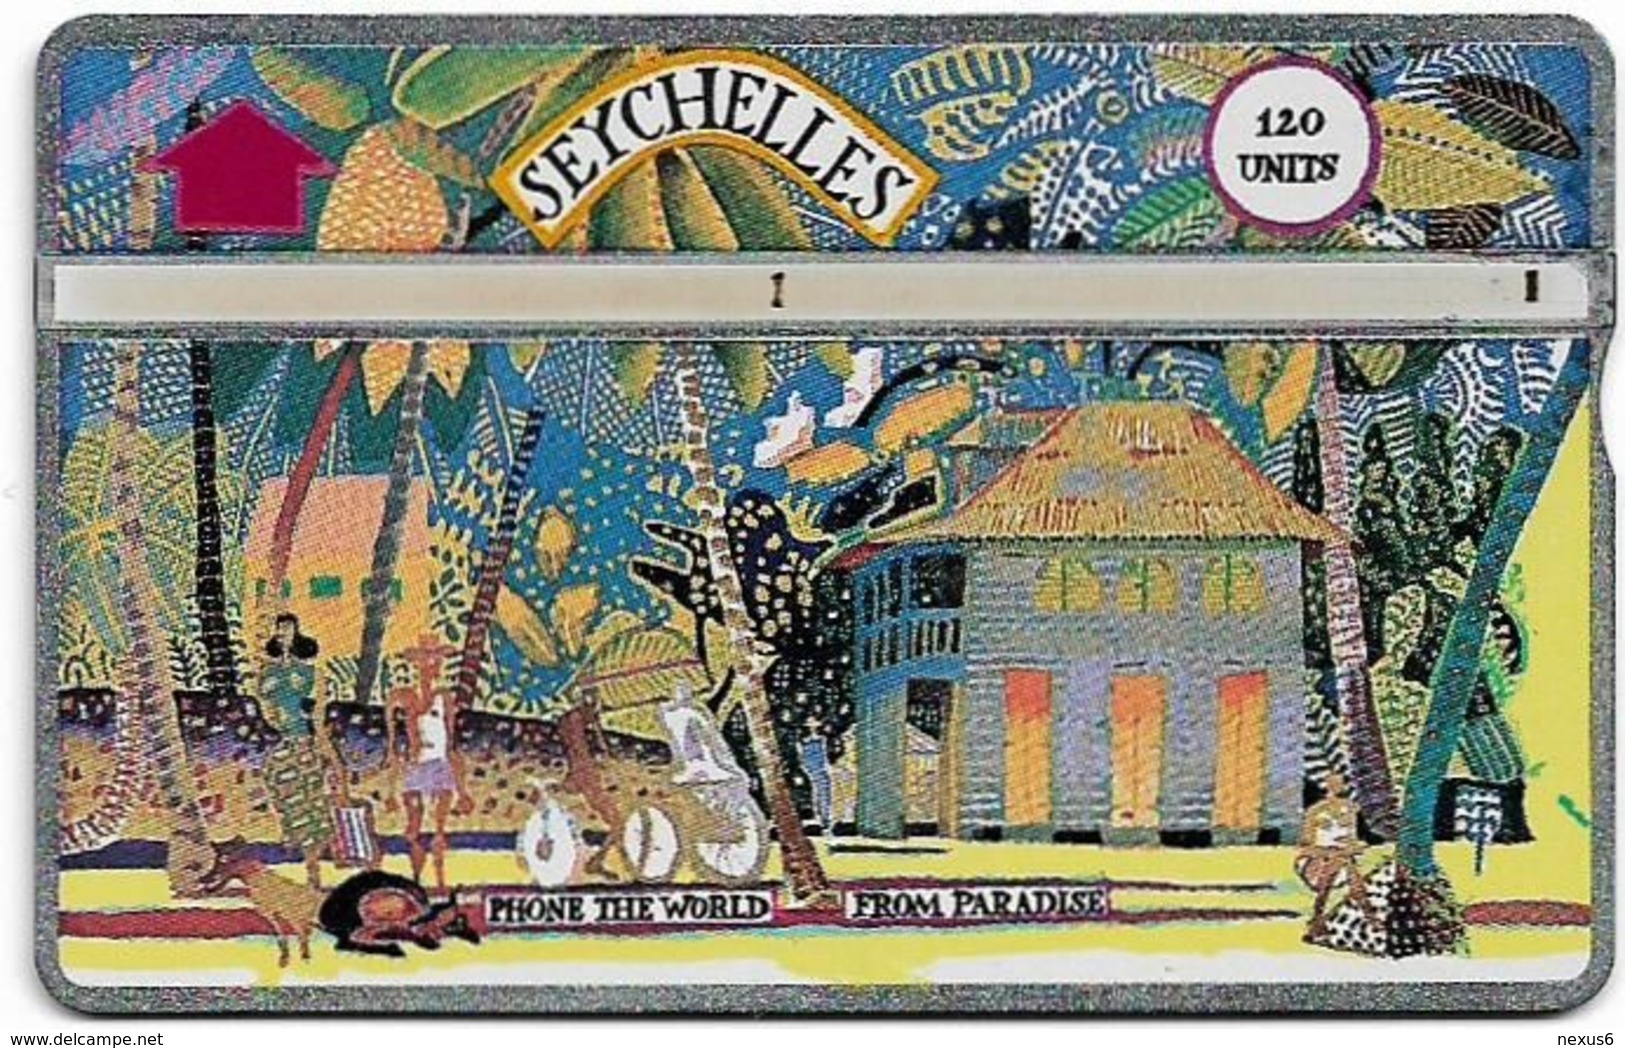 Seychelles - C&W Seytels (L&G) - Madam Rene's House, La Digue - 203C - 120U, 03.1992, 16.000ex, Used - Seychelles